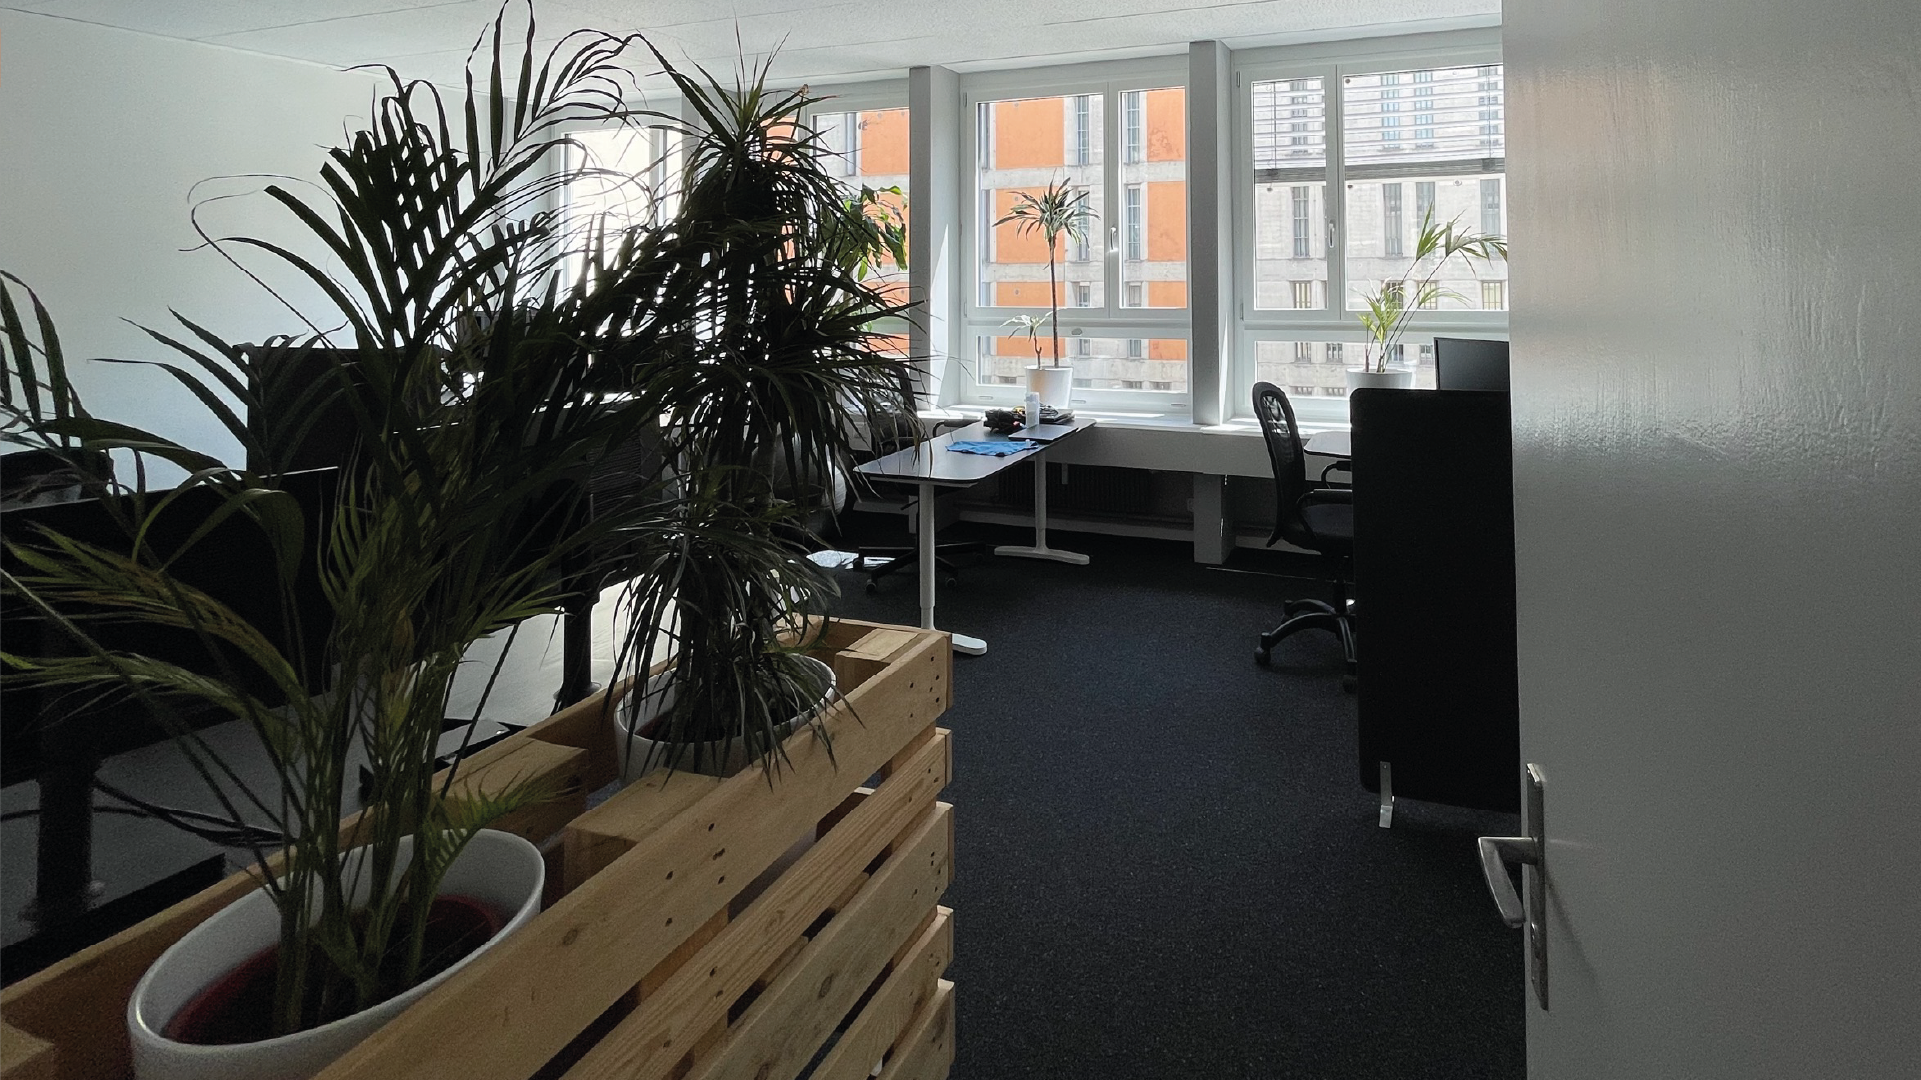 Büro mit Pflanzen im Vordergrund